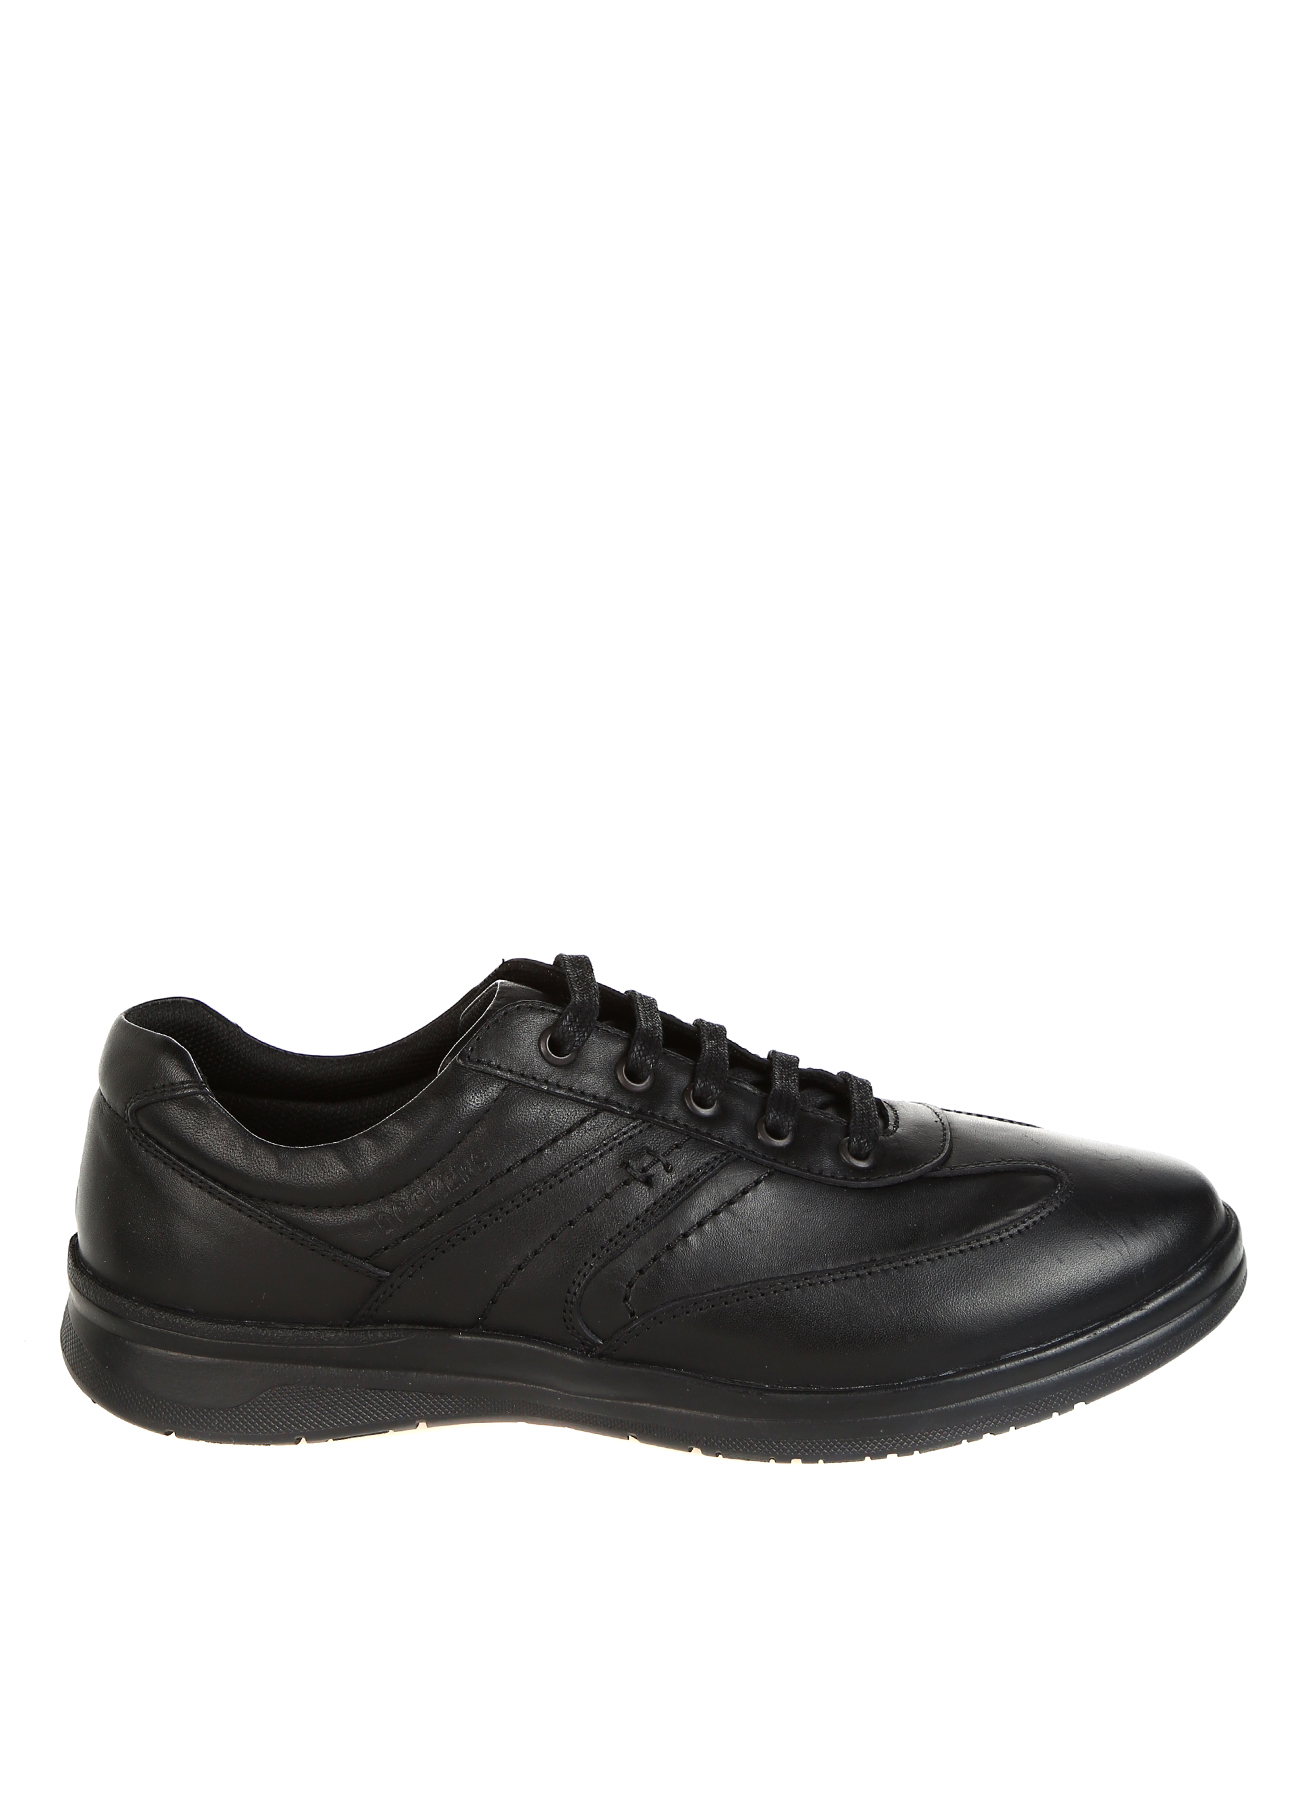 Dockers Klasik Ayakkabı 44 5001921422002 Ürün Resmi